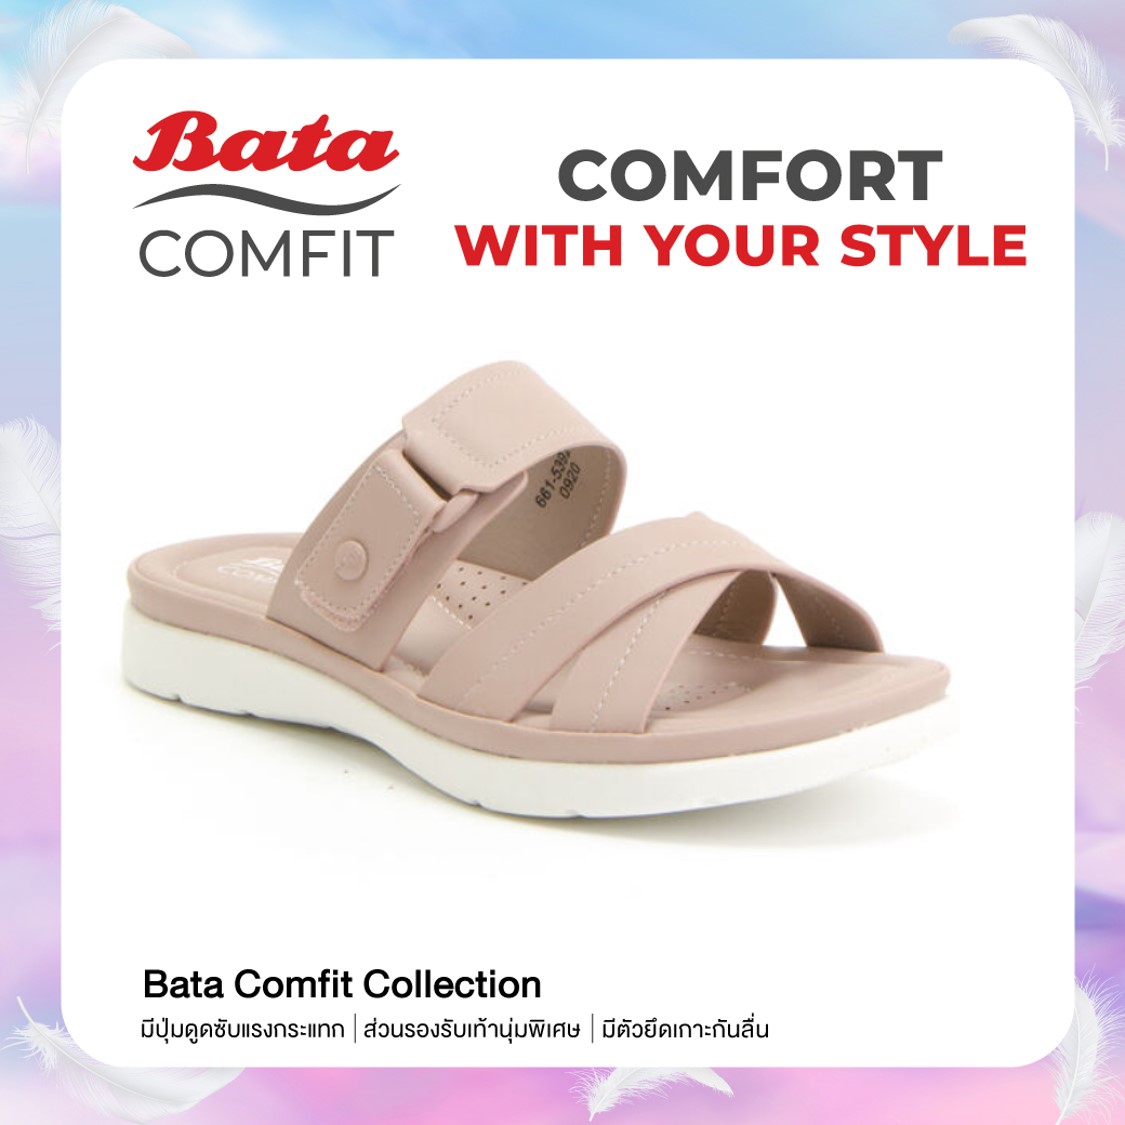 Bata COMFIT รองเท้าแตะ รองเท้าเพื่อสุขภาพ แบบสวม ใส่สบาย สำหรับผู้หญิง สีชมพูกะปิ รหัส 6615392